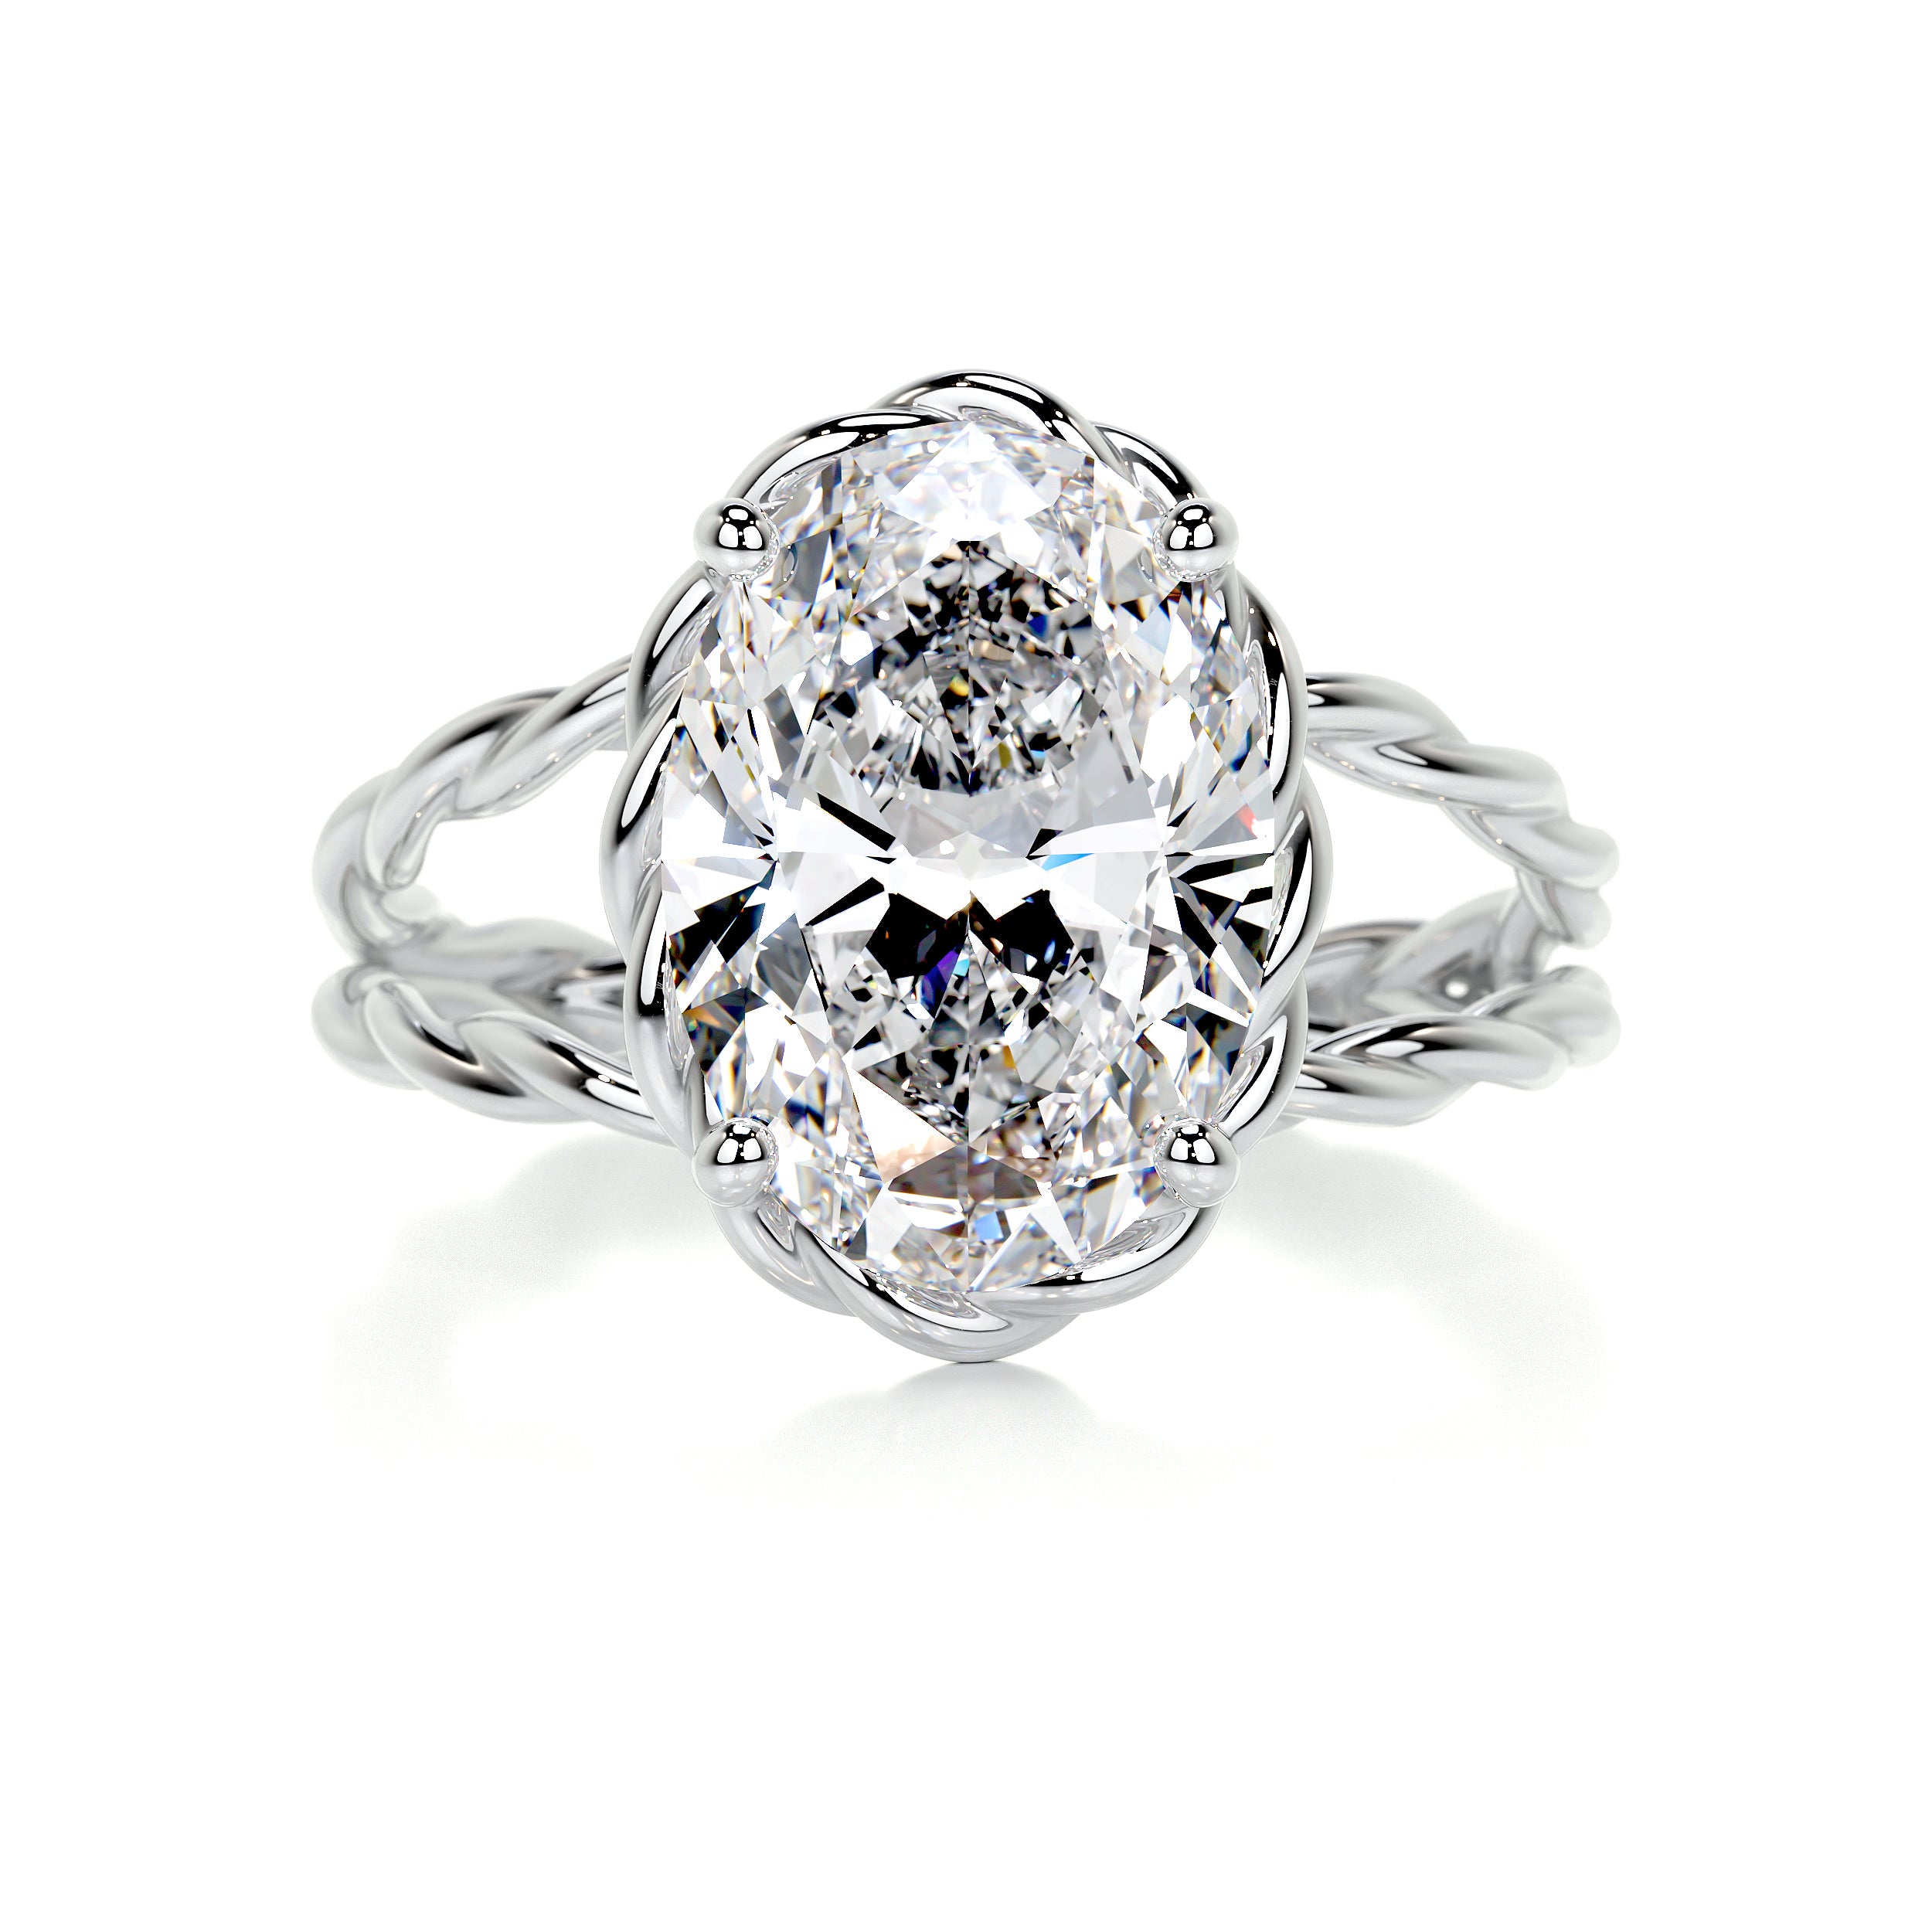 Milani Diamond Engagement Ring   (3 Carat) -14K White Gold